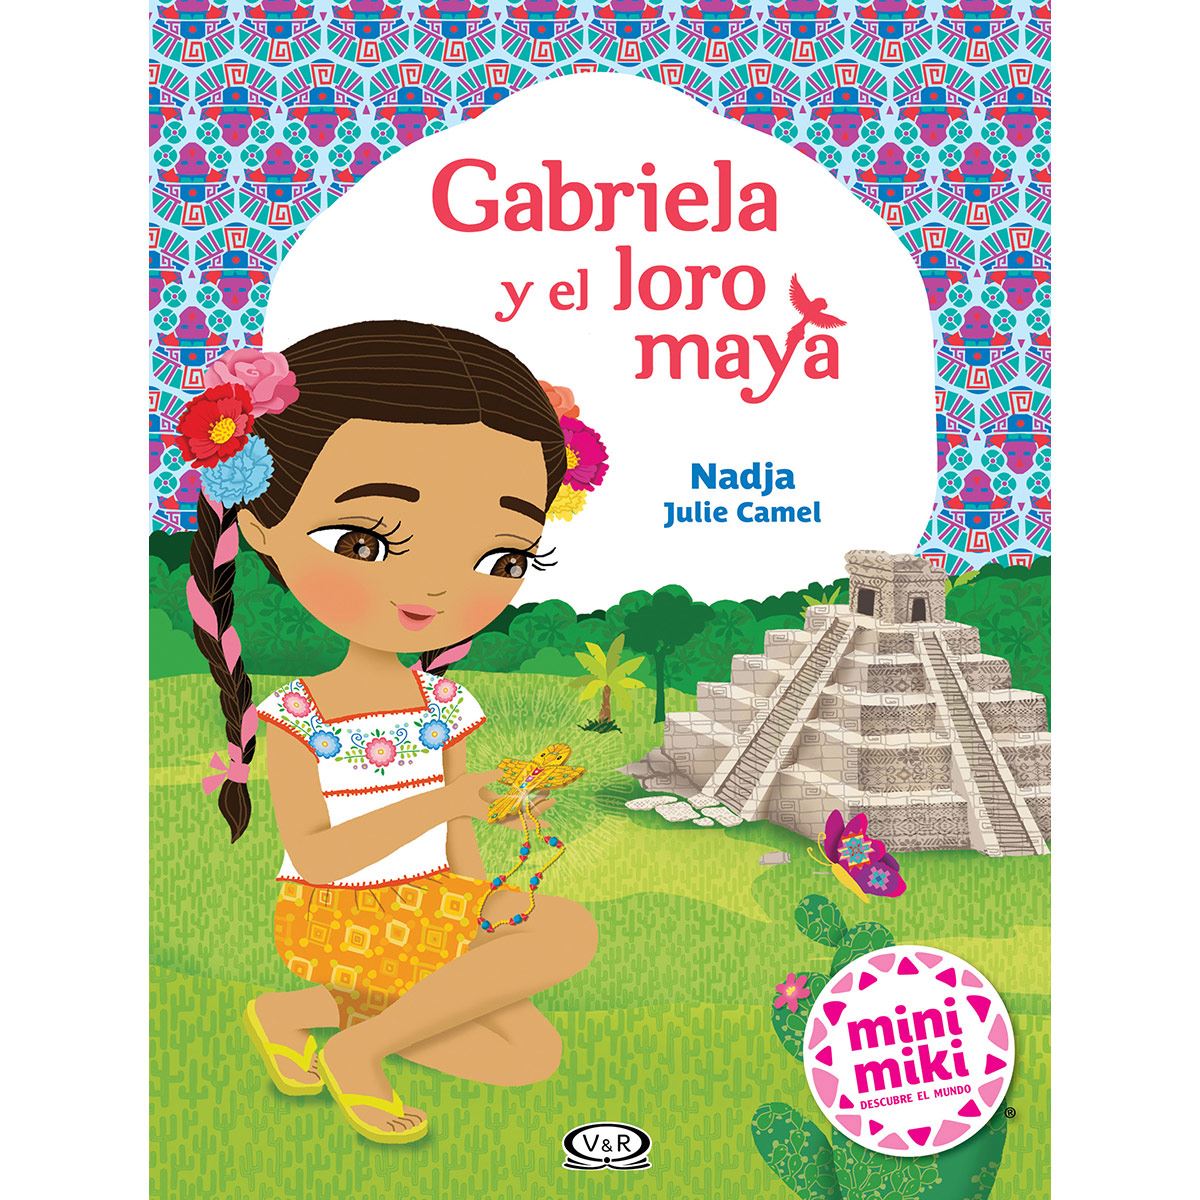 Gabriela y el loro maya